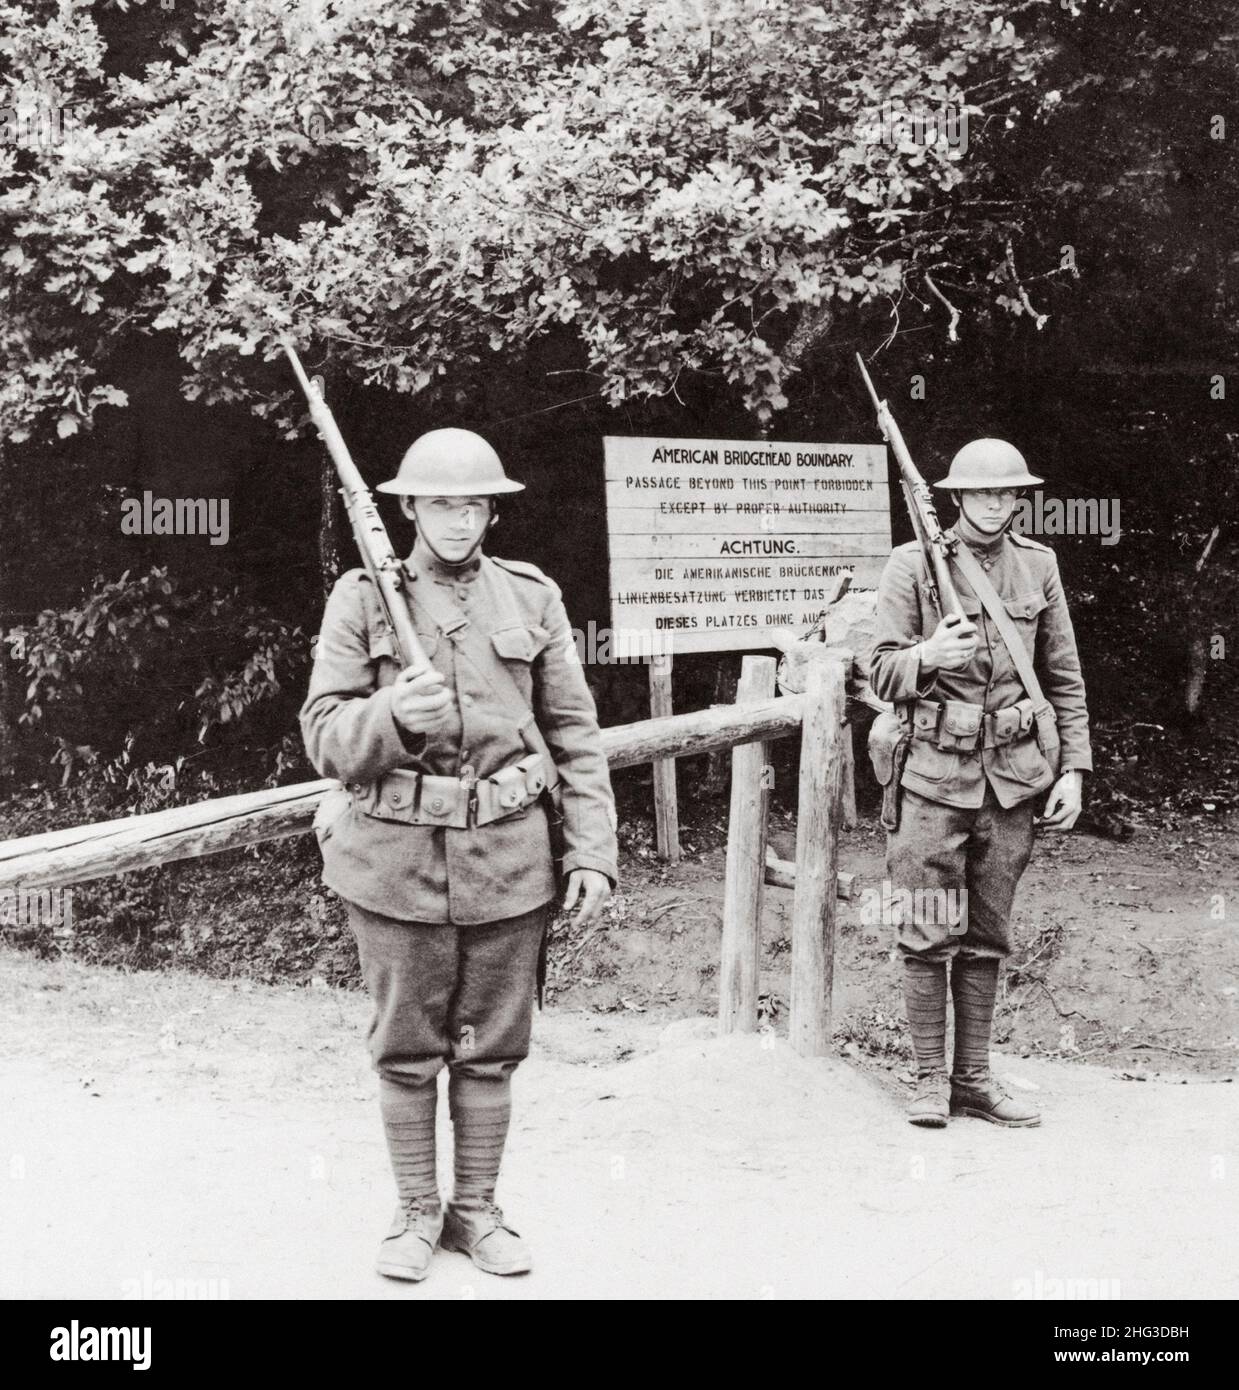 Archivfoto des Ersten Weltkriegs, Garde an der American Bridgehead Boundary, „Montabaur“ am Rhein. 1920 Stockfoto